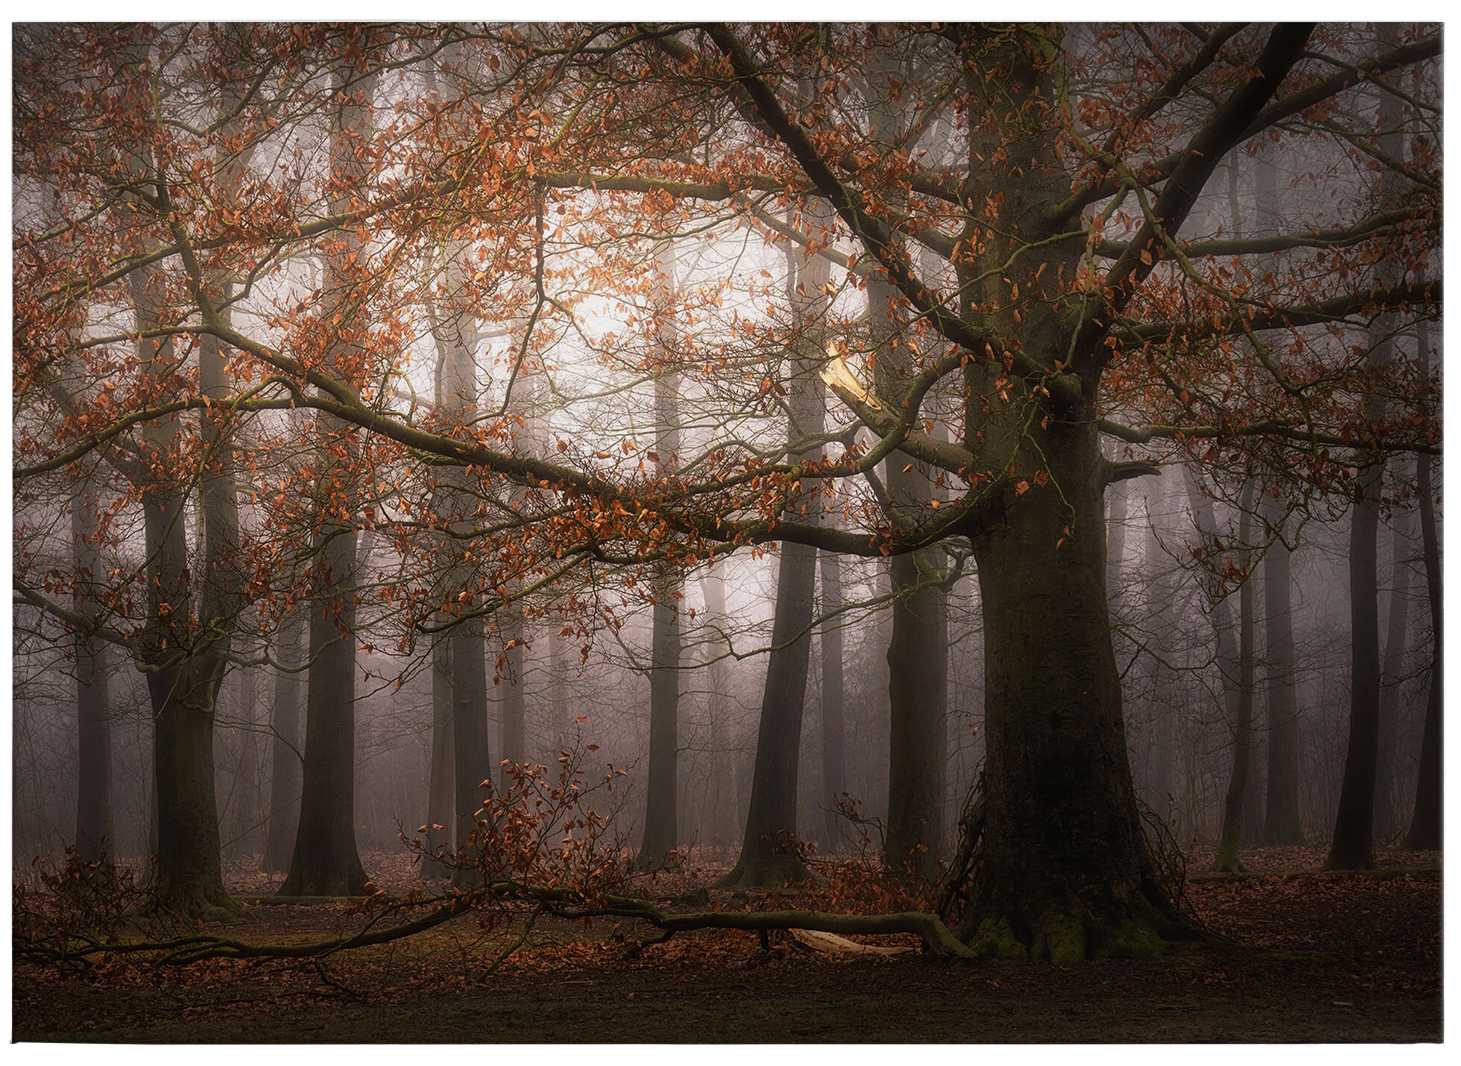             Leinwandbild mit Blätterwald im November von Digemans – 0,70 m x 0,50 m
        